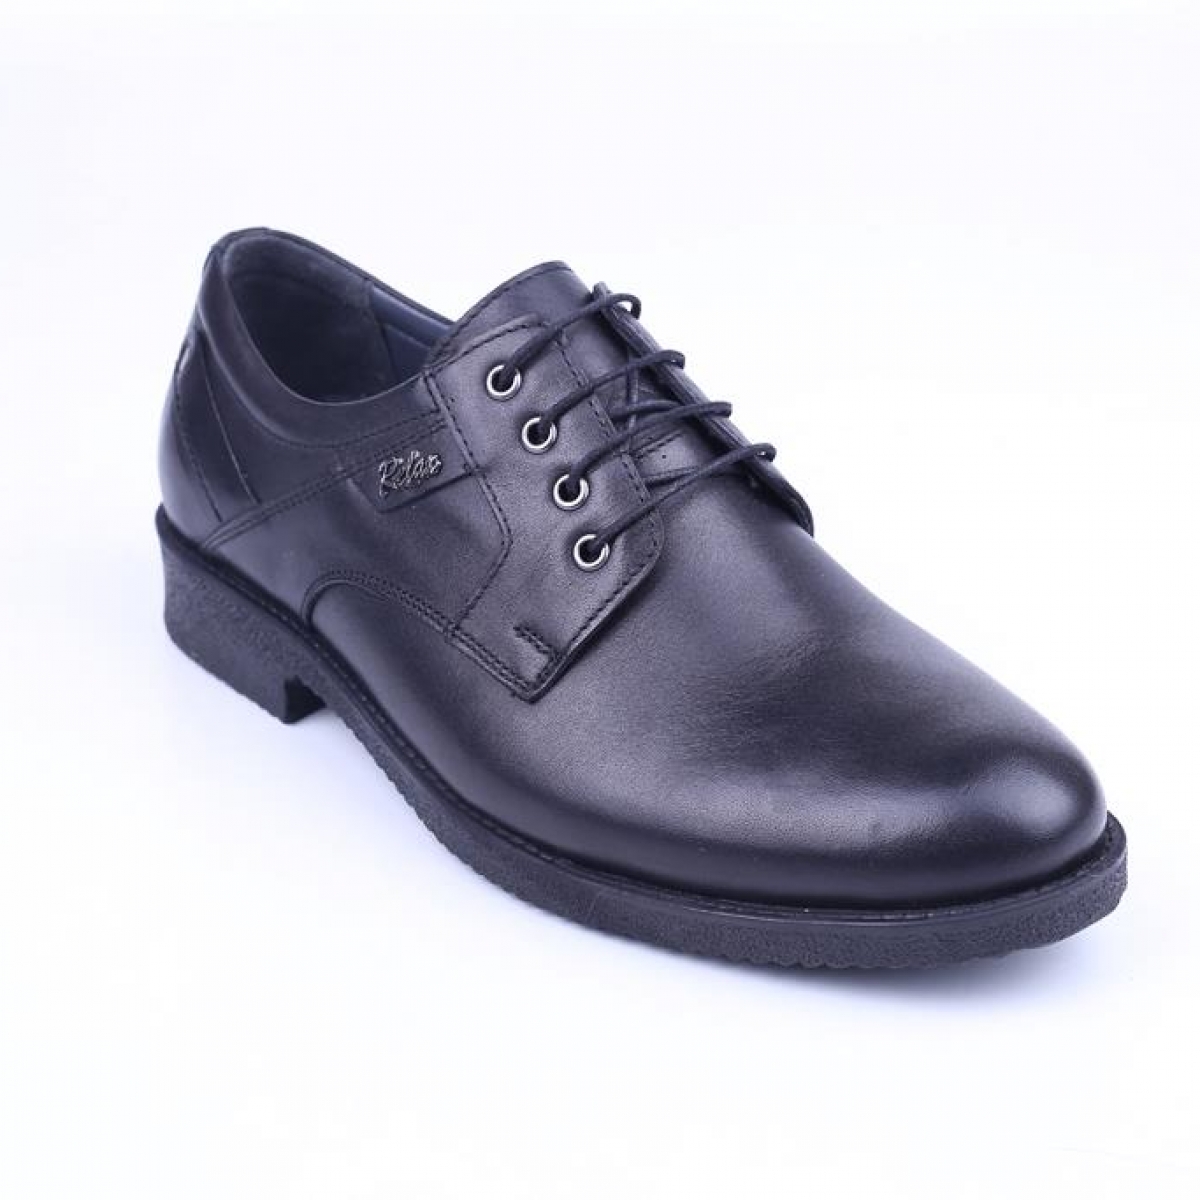 Flo Cmf 27 Erkek Hakiki Deri Bağcıklı Klasik Ayakkabı. 1